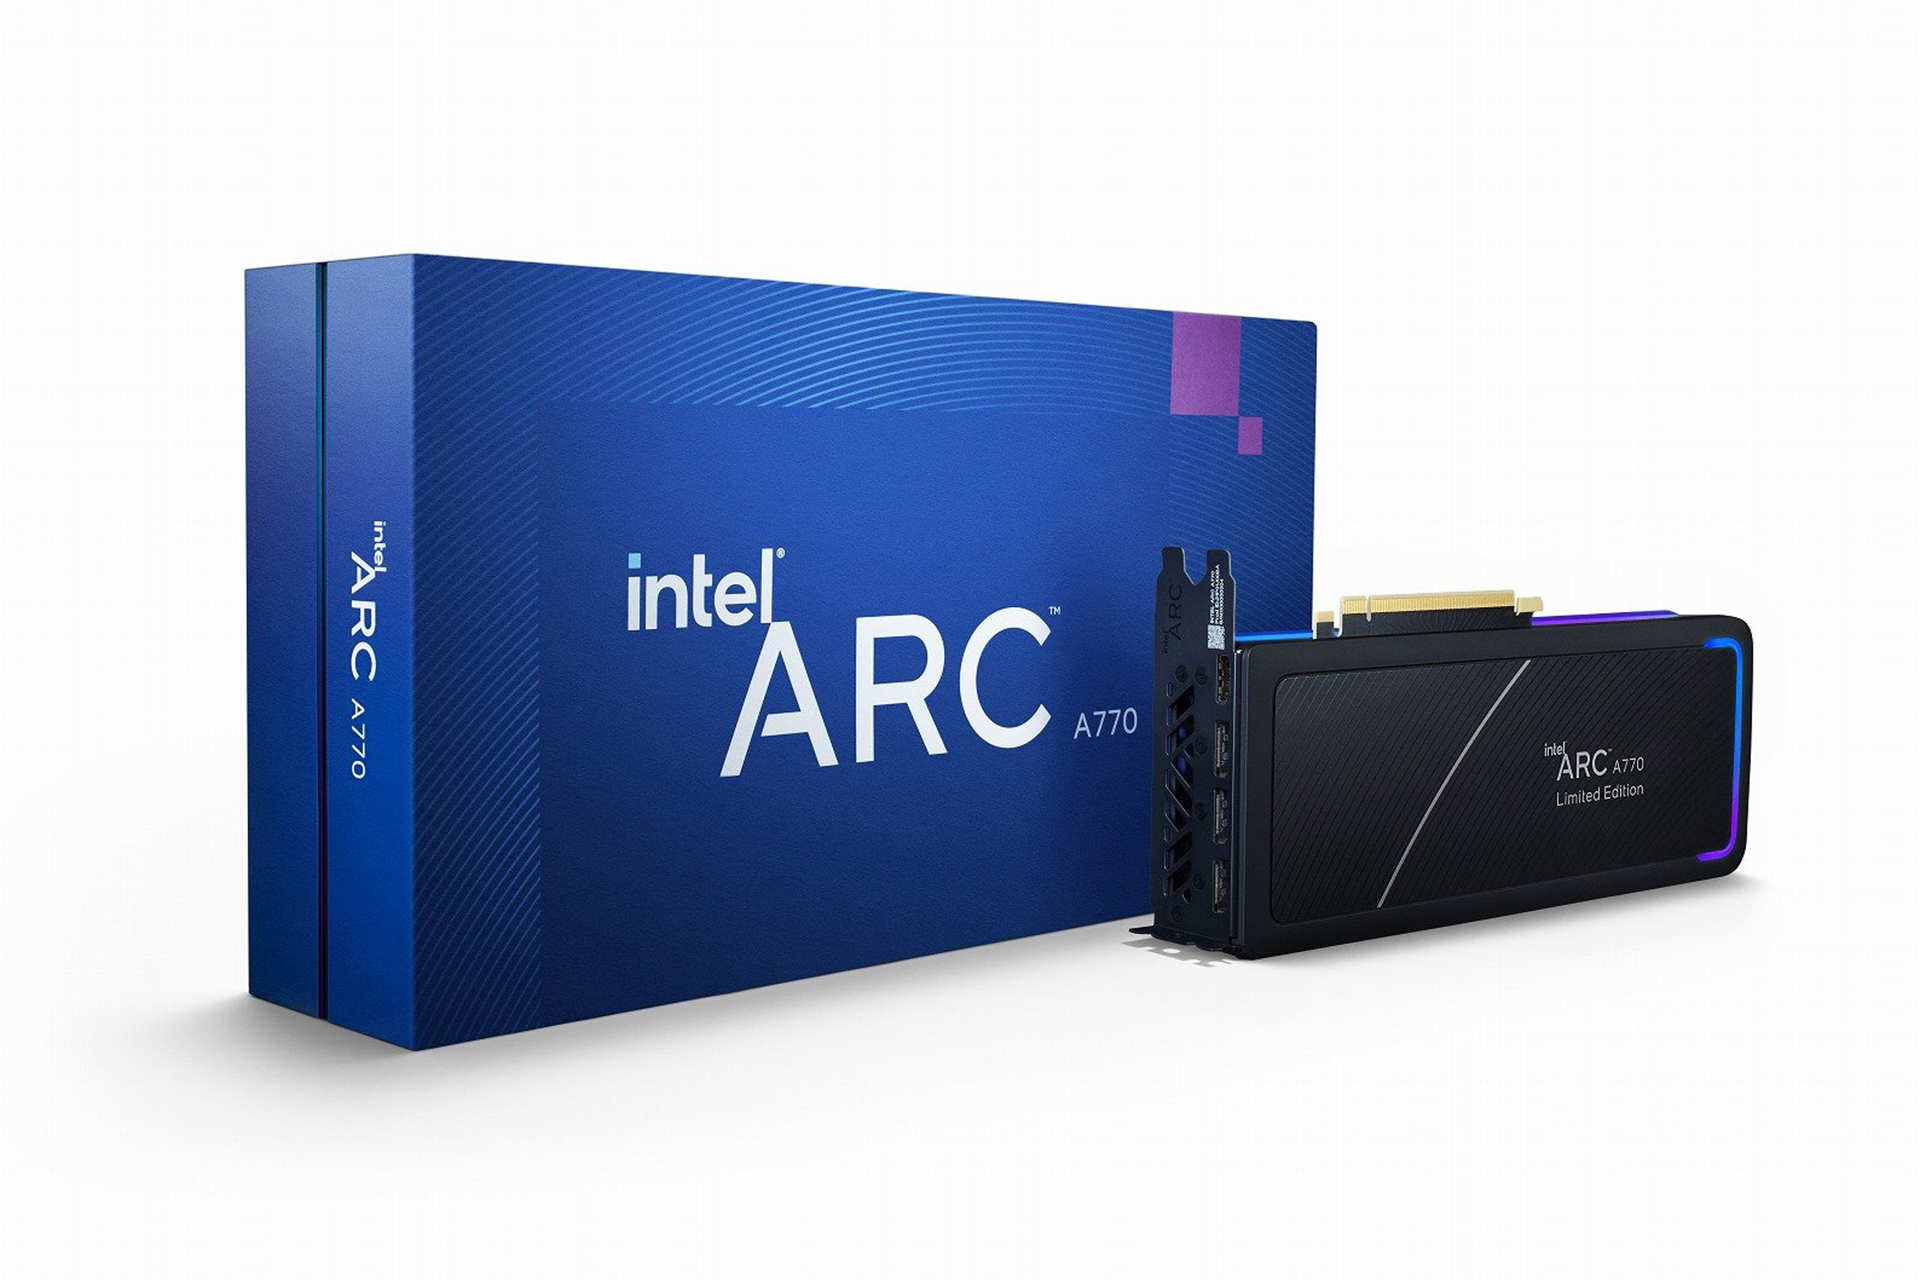 اینتل پردازنده گرافیکی Arc A770 را با قیمت ۳۲۹ دلار معرفی کرد